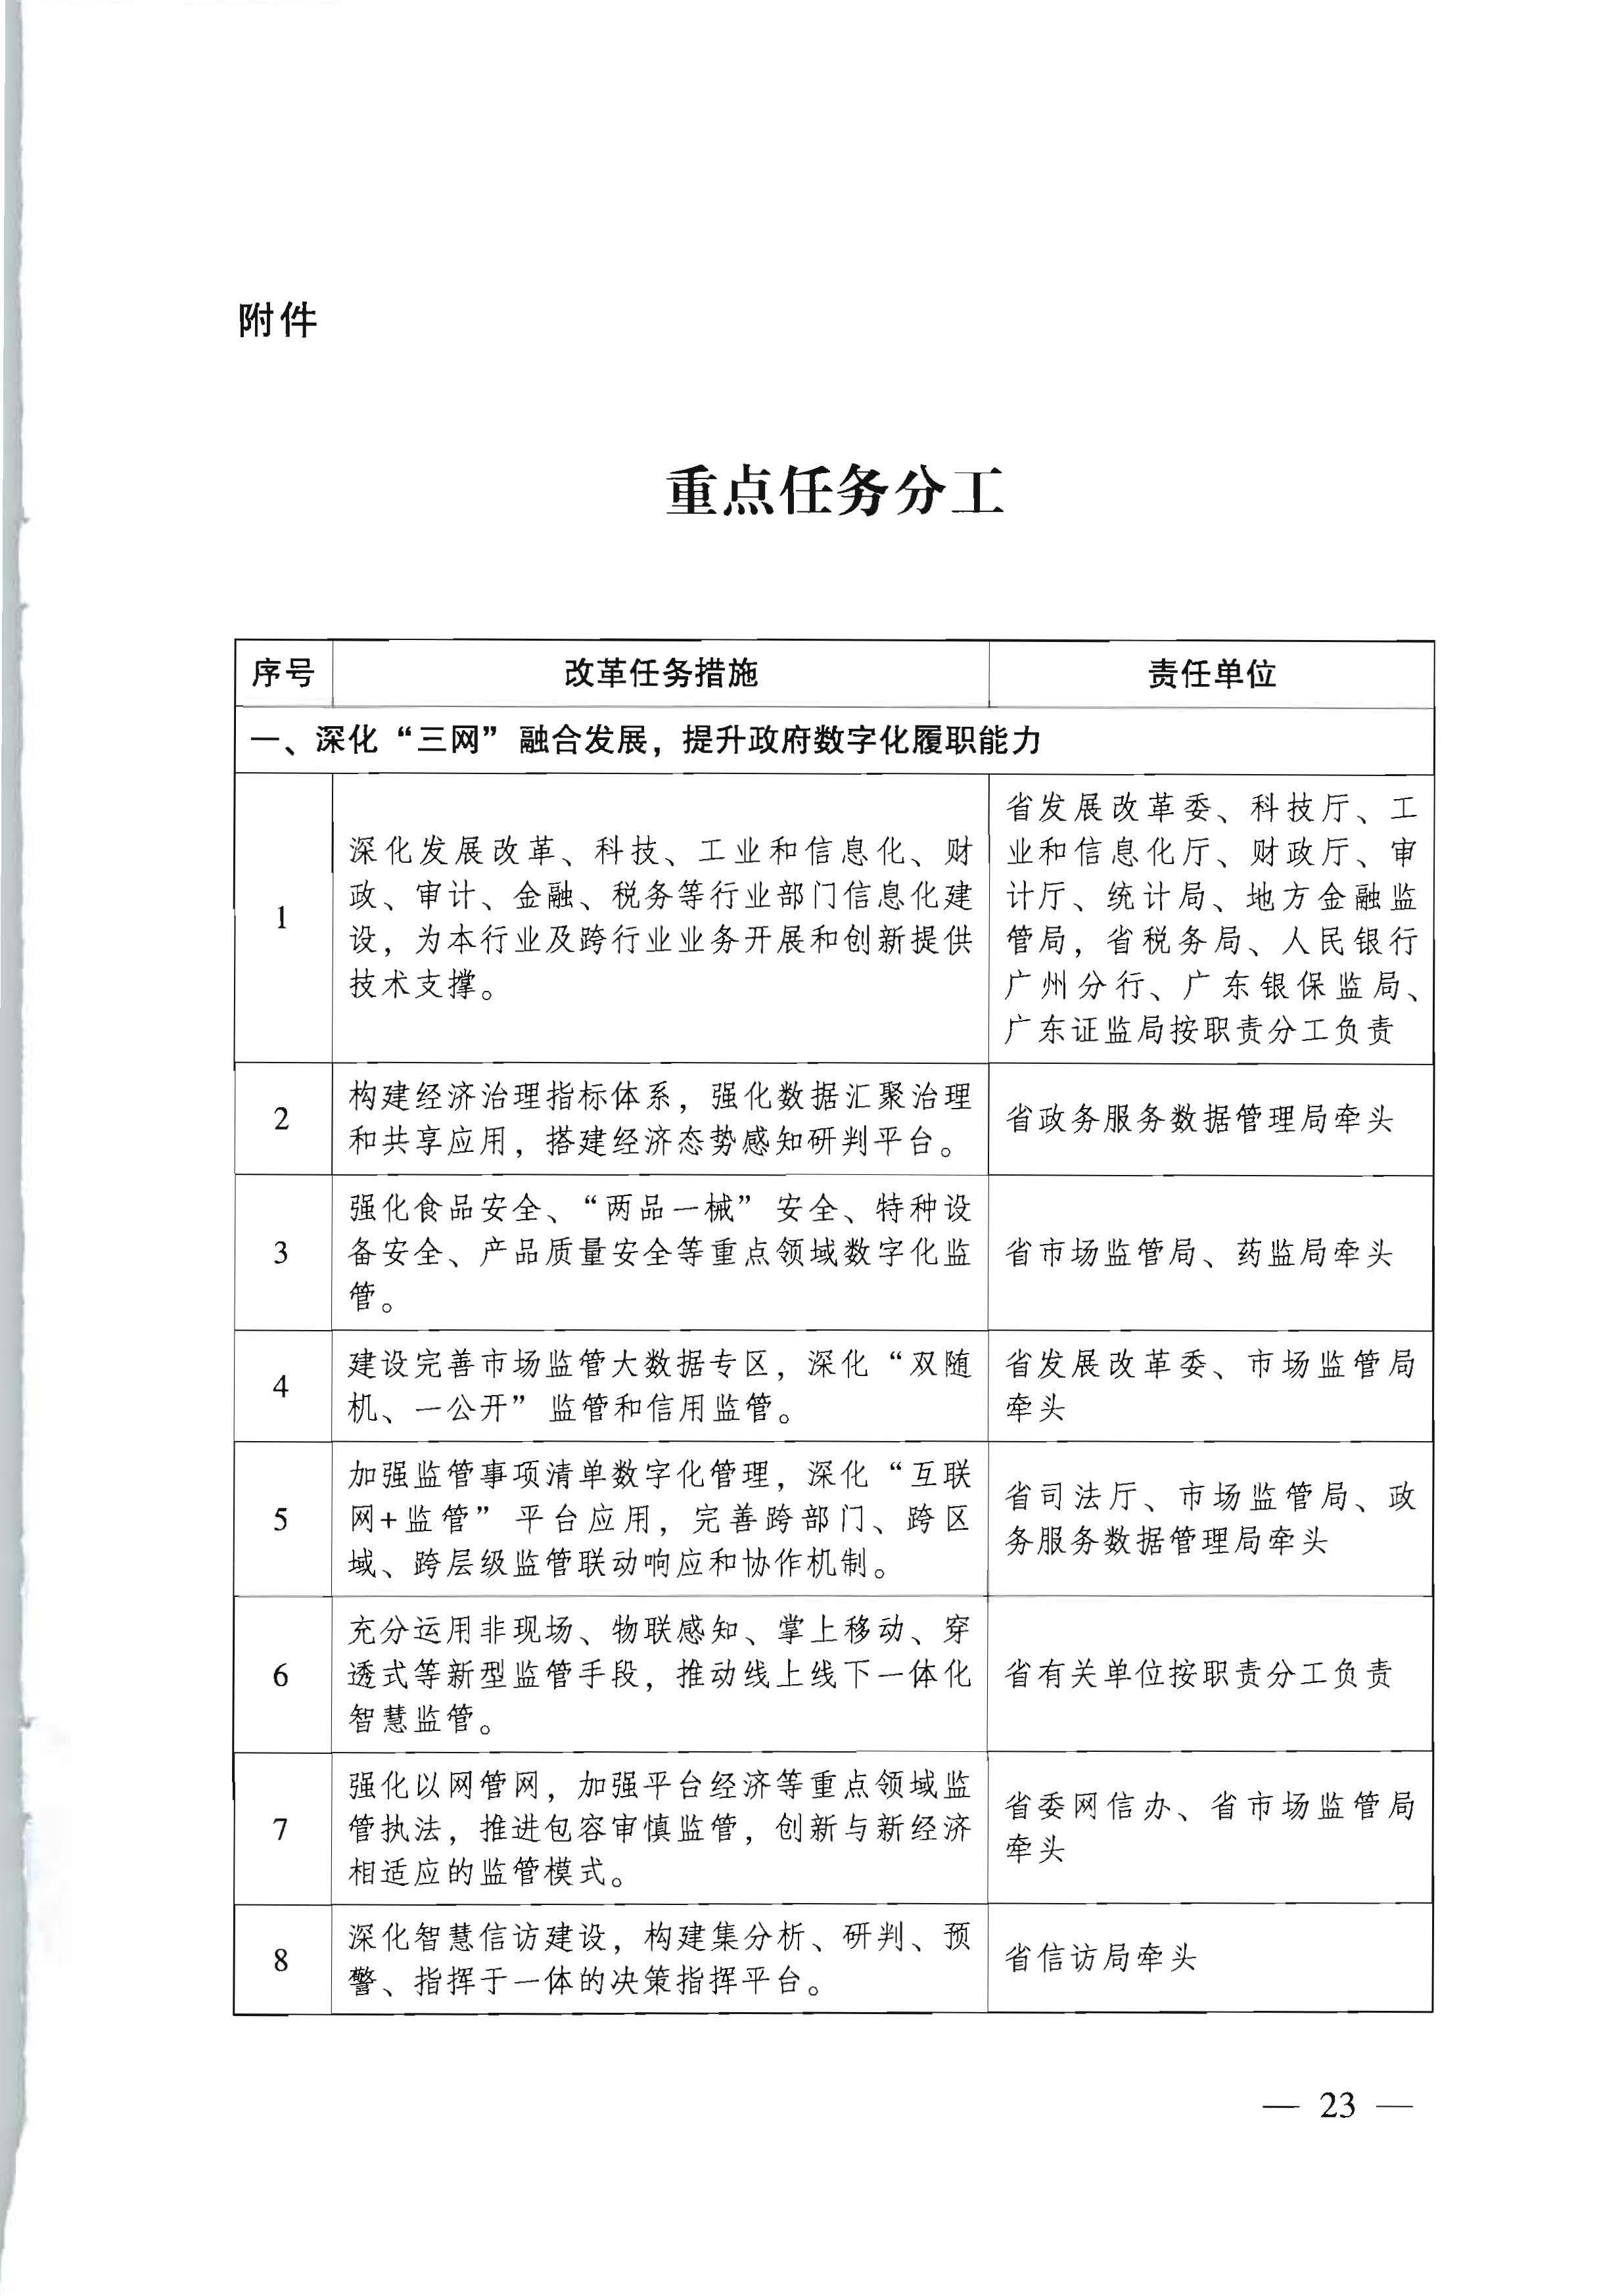 广东省人民政府关于进一步深化数字政府改革建设的实施意见_页面_23.jpg